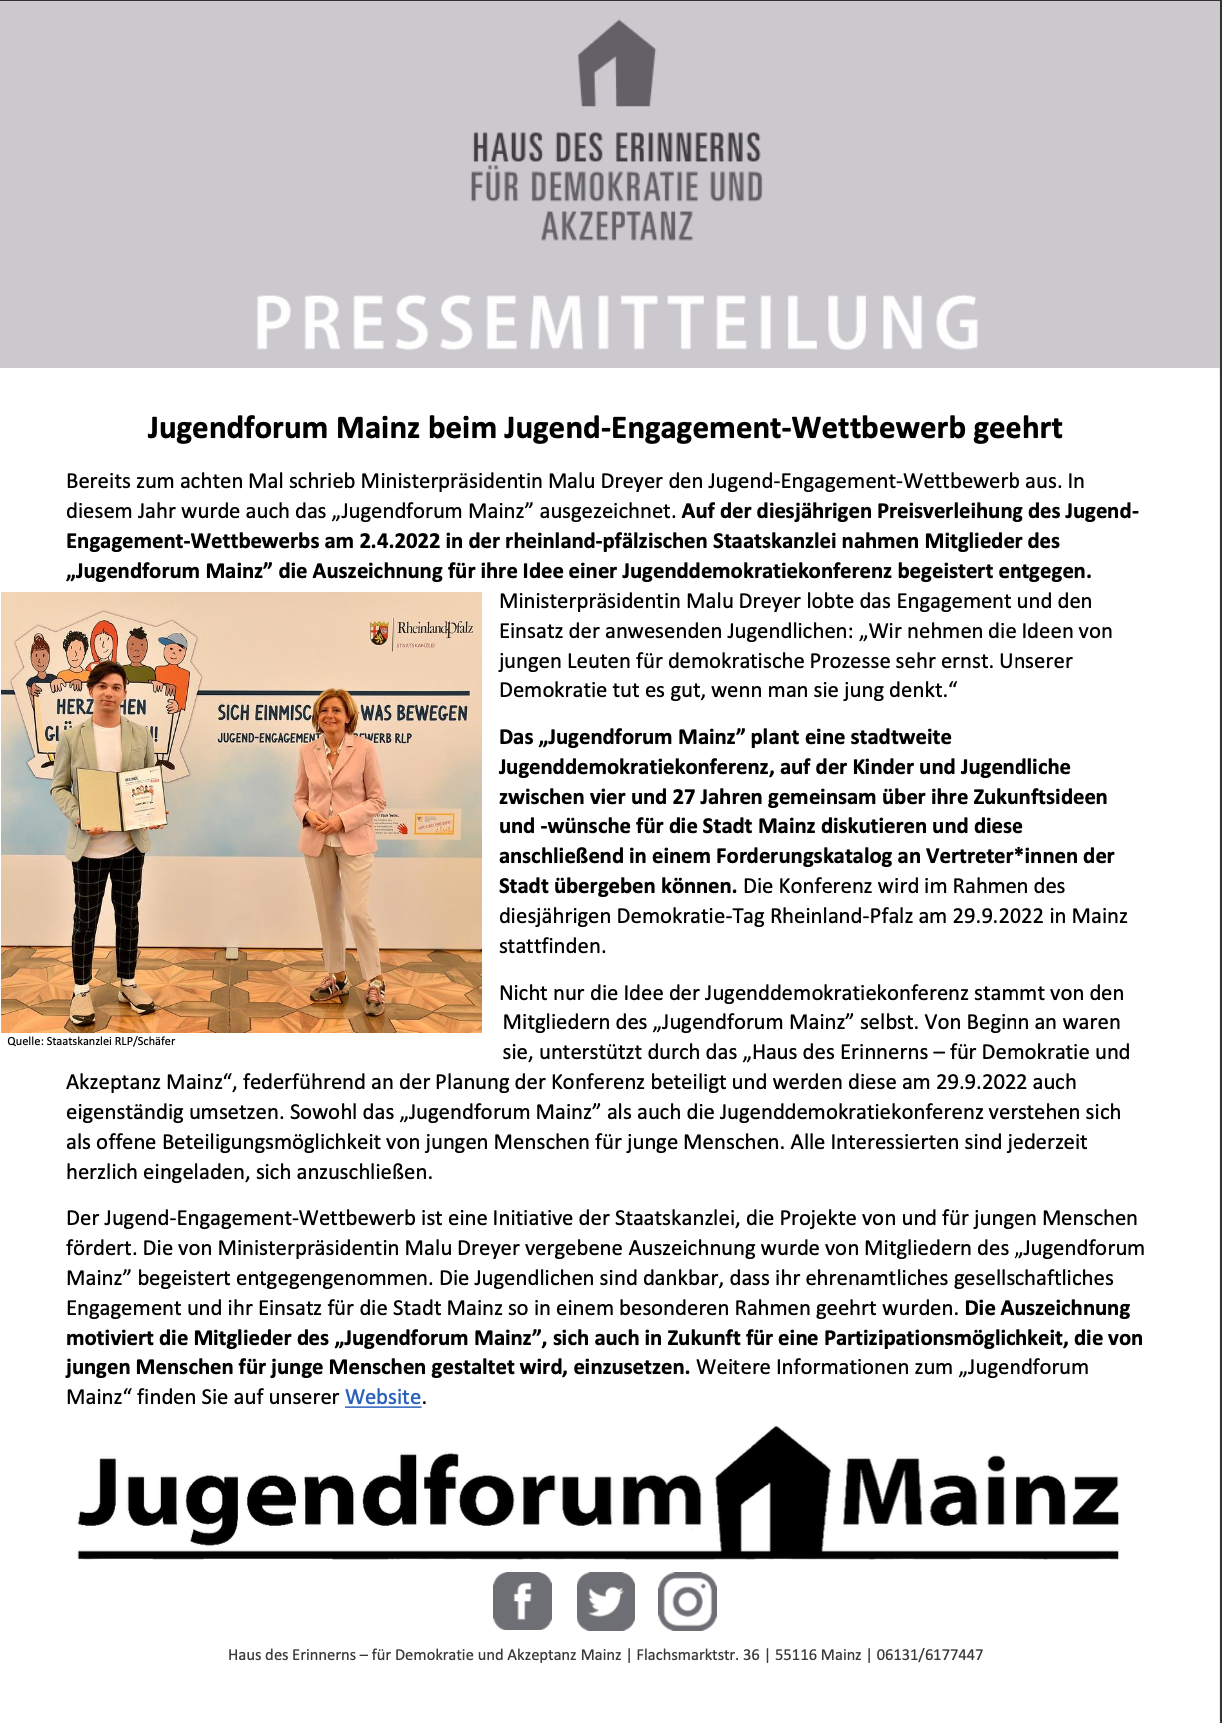 Jugendforum Mainz beim Jugend-Engagement-Wettbewerb von Ministerpräsidentin geehrt